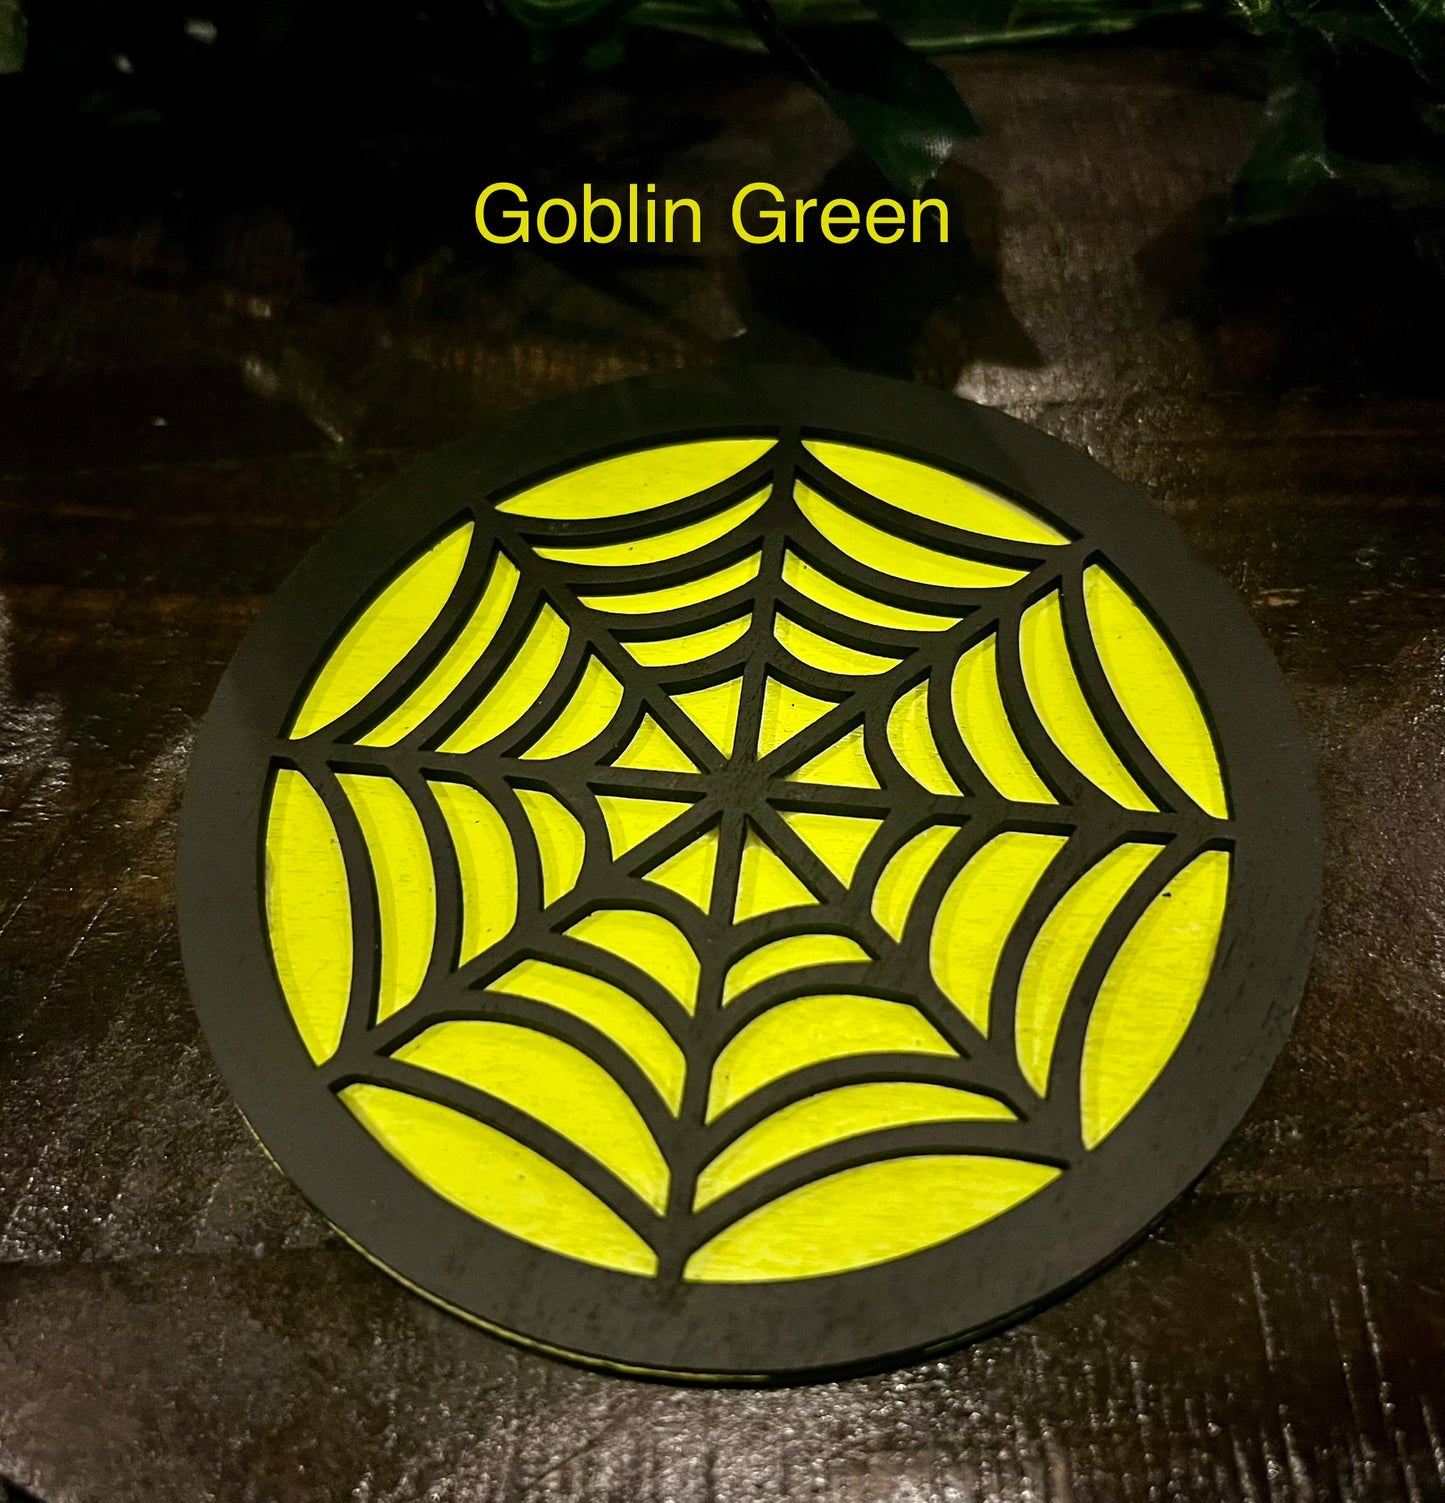 Coasters - Spiderweb 3D Design 4" round